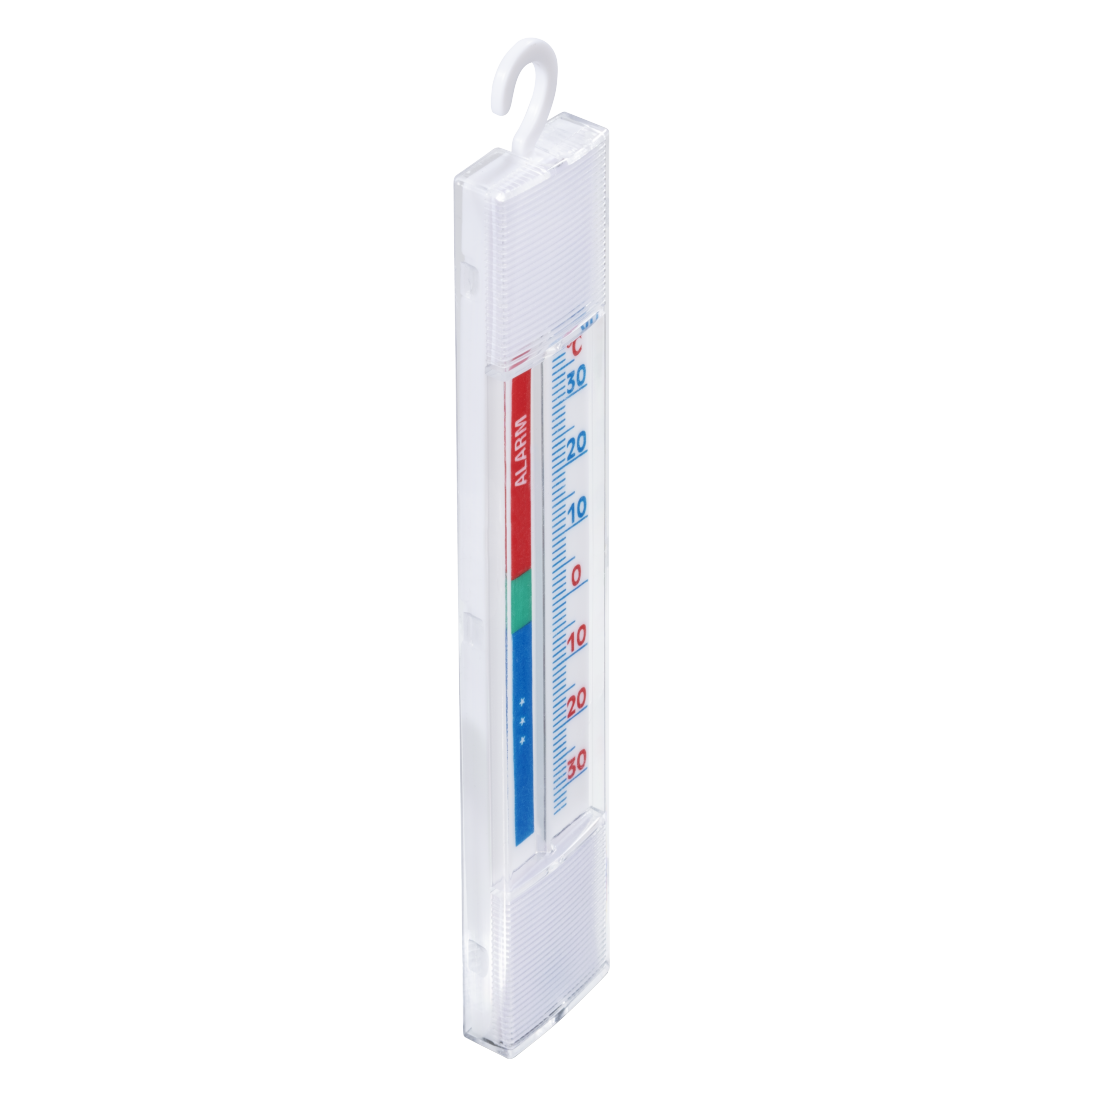 abx10 Druckfähige Abbildung 10 - Xavax, Analoges Thermometer für Kühlschrank, Gefrierschrank und Kühltruhe